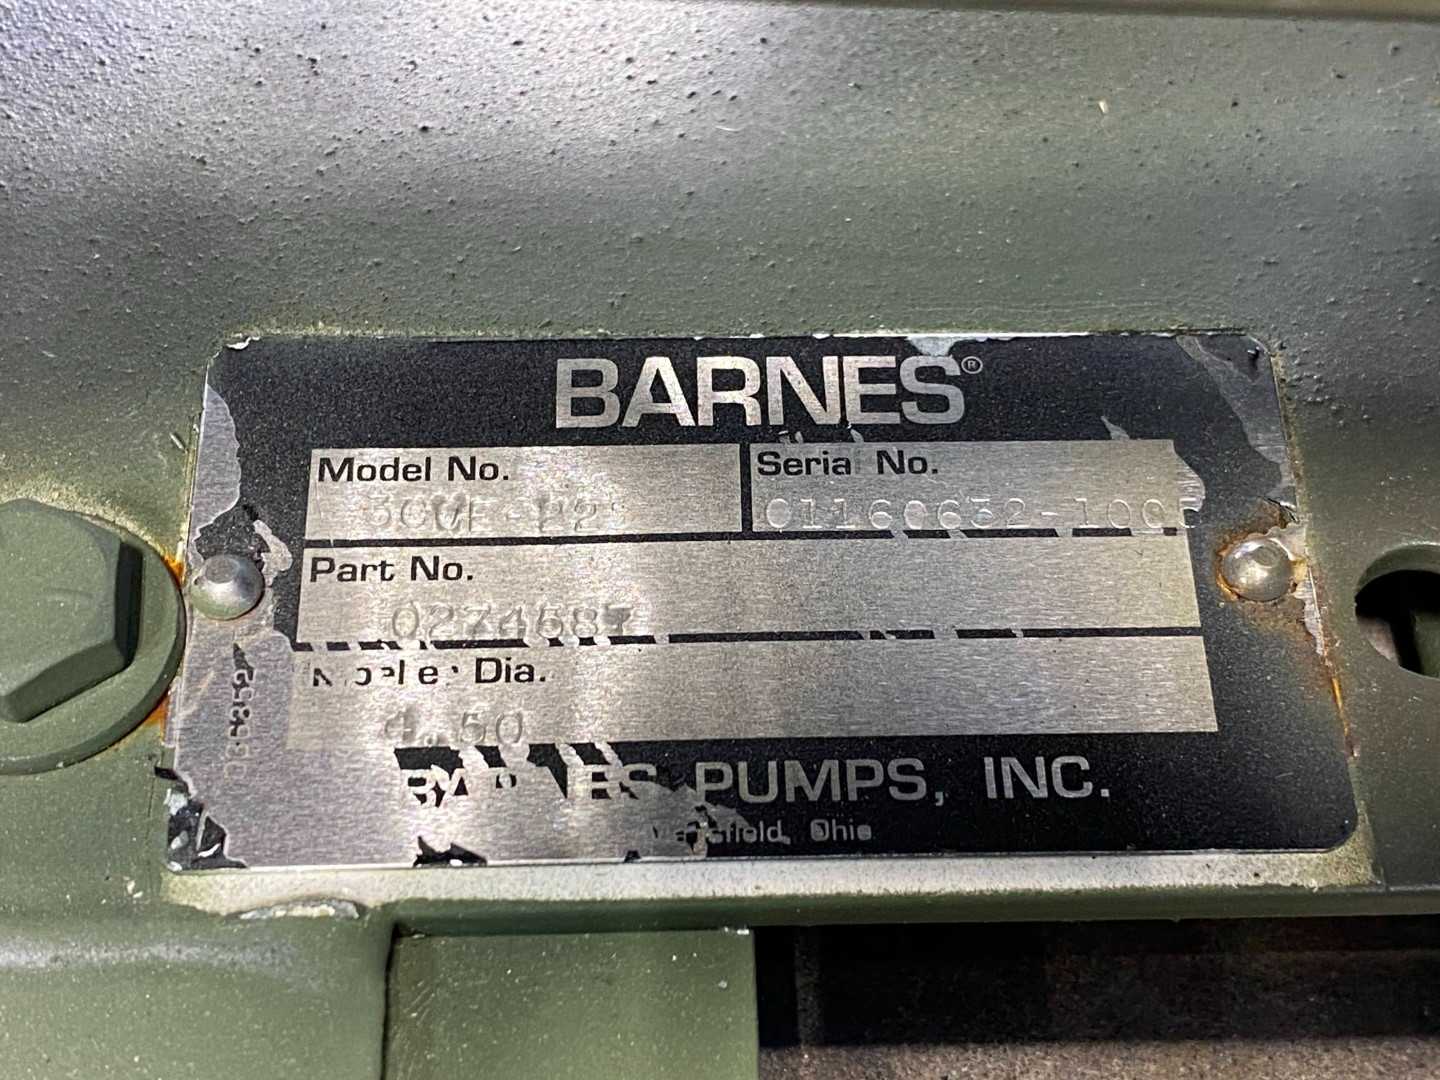 Barnes 1.5 hp 3450rpm 3ph Centrifugal Pump 3CCE-22 P/N 027458T